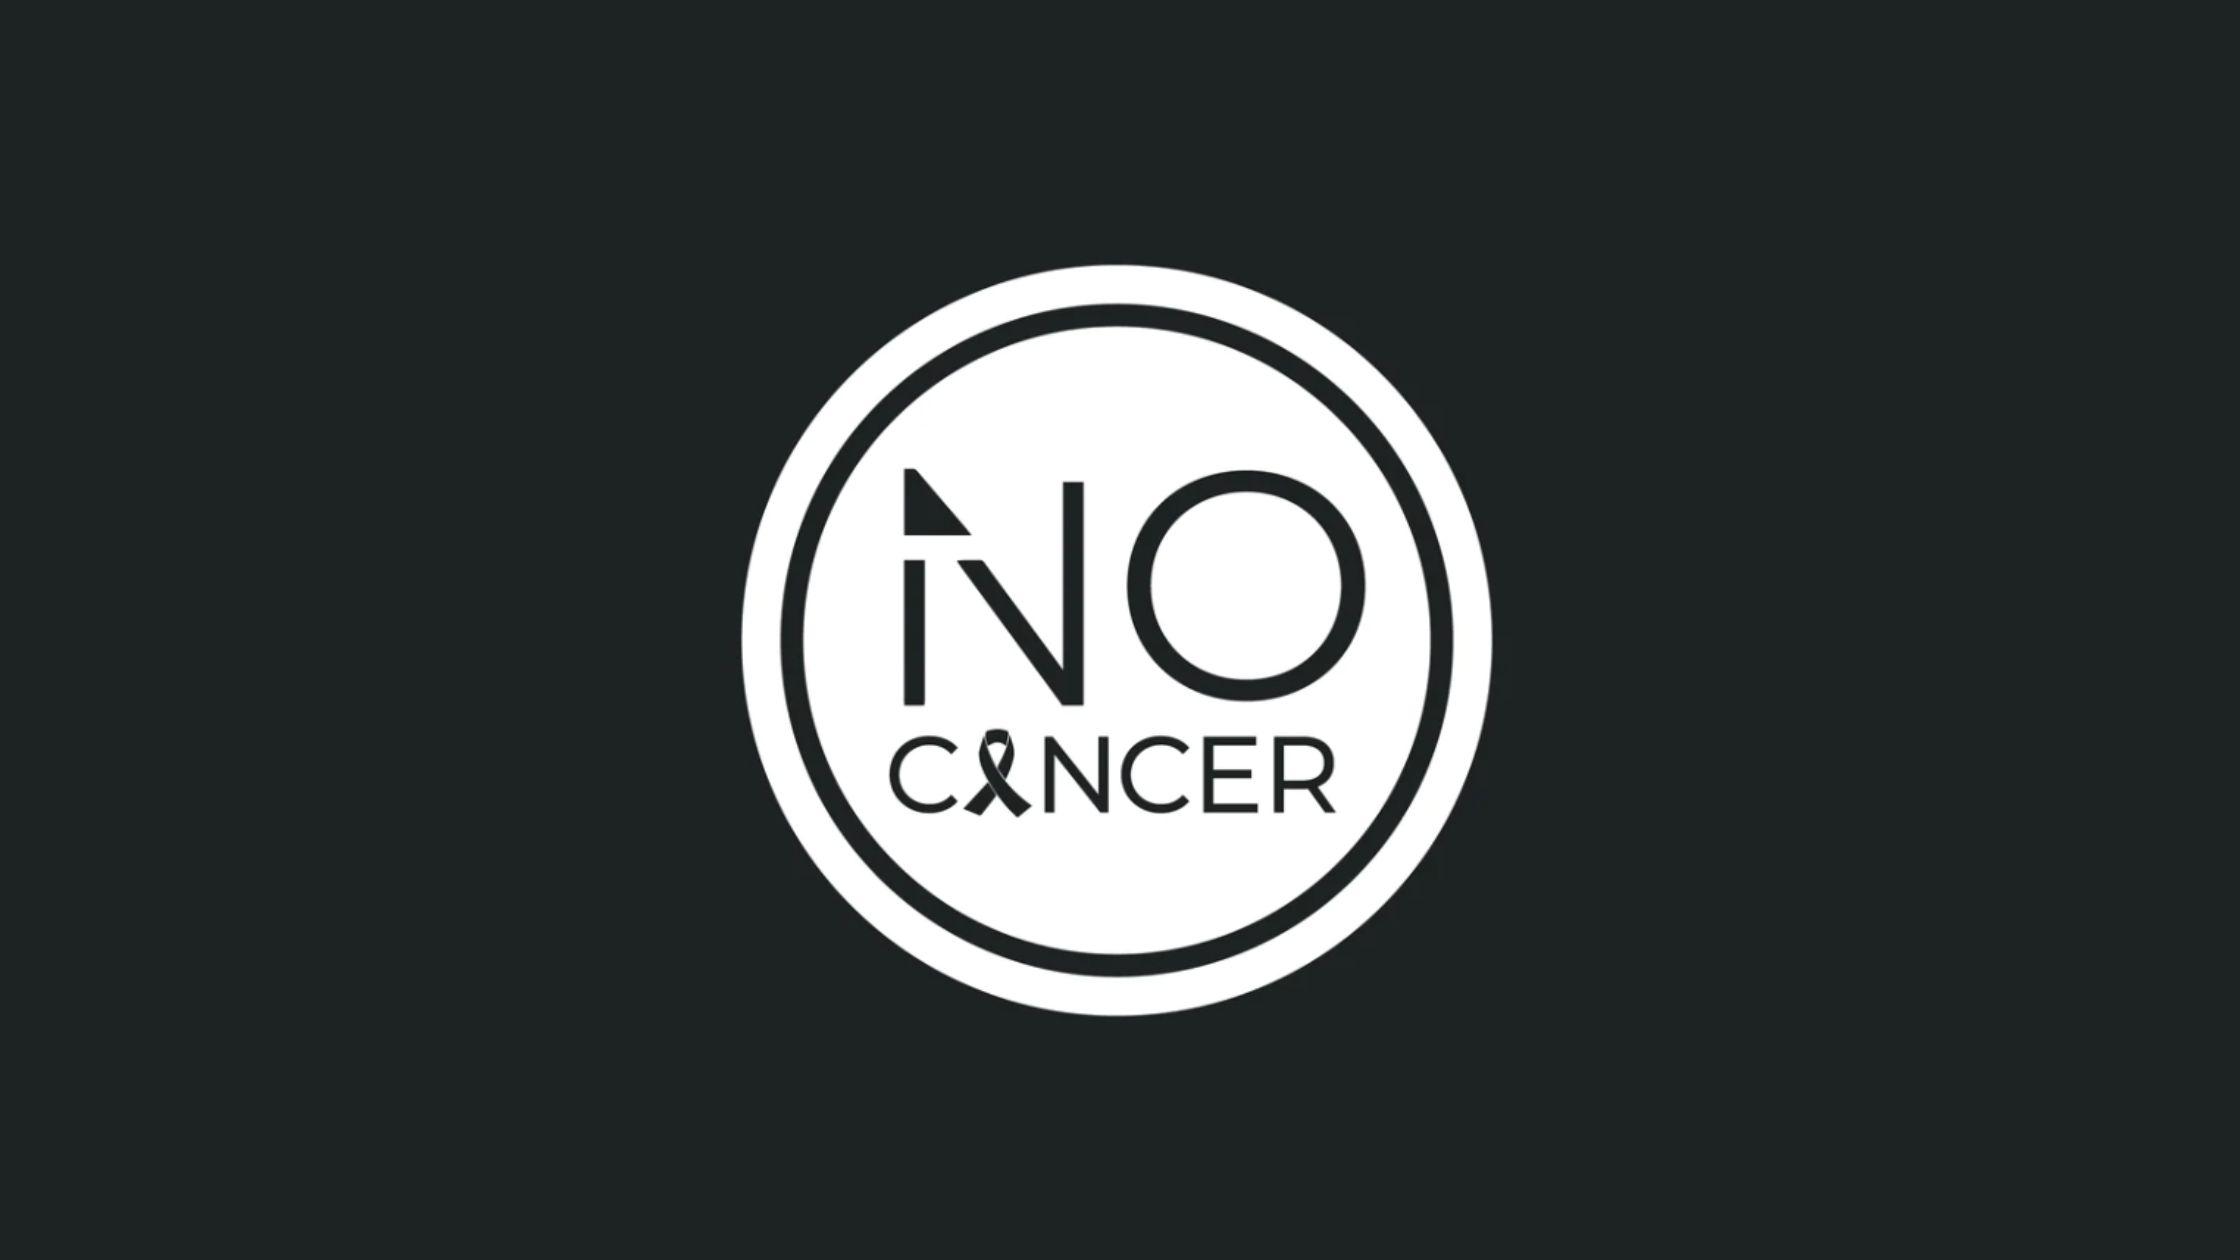 No Cancer 2